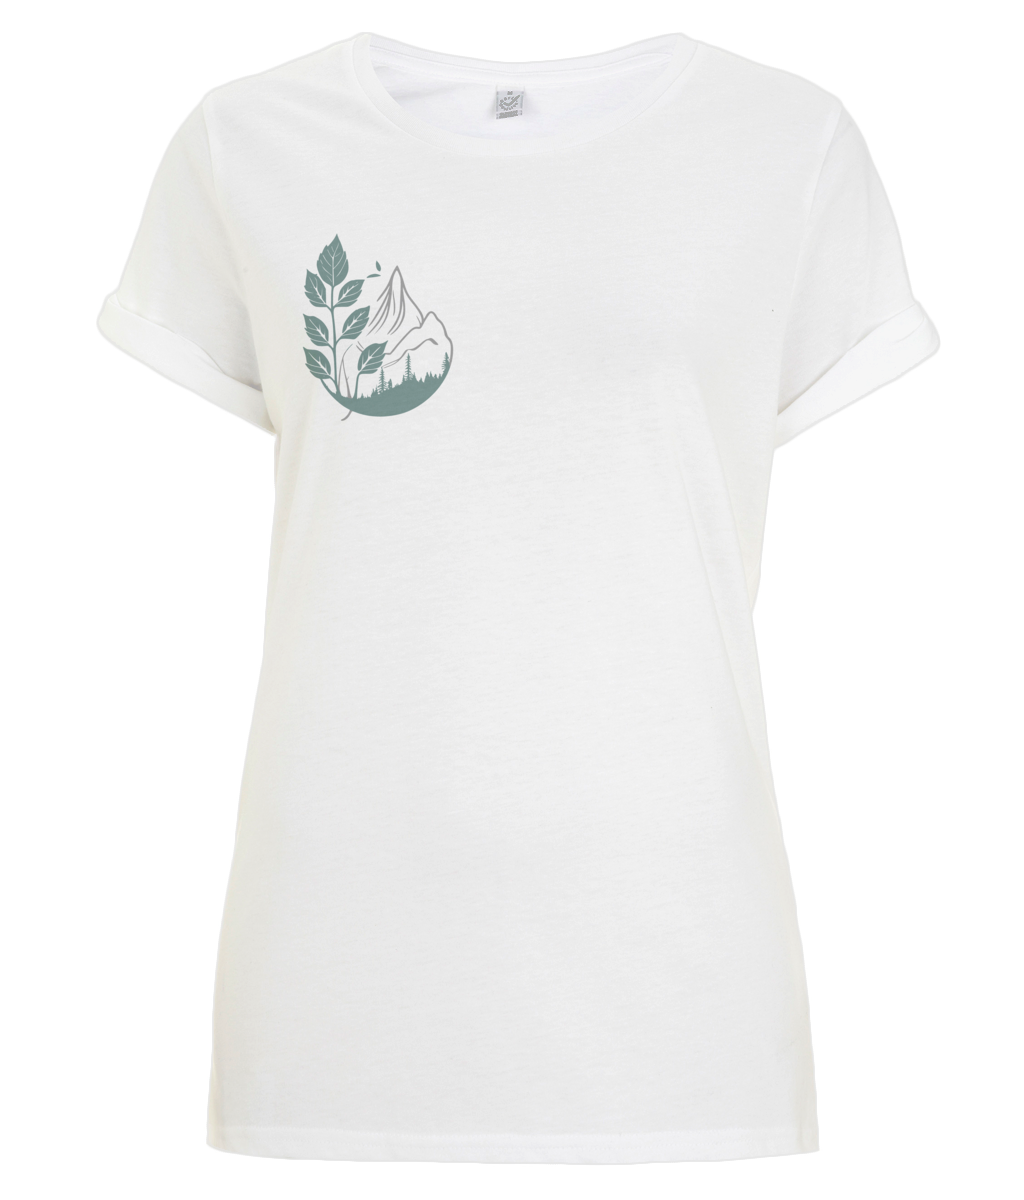 Adventurer T-Shirt - The Mountain's Garden